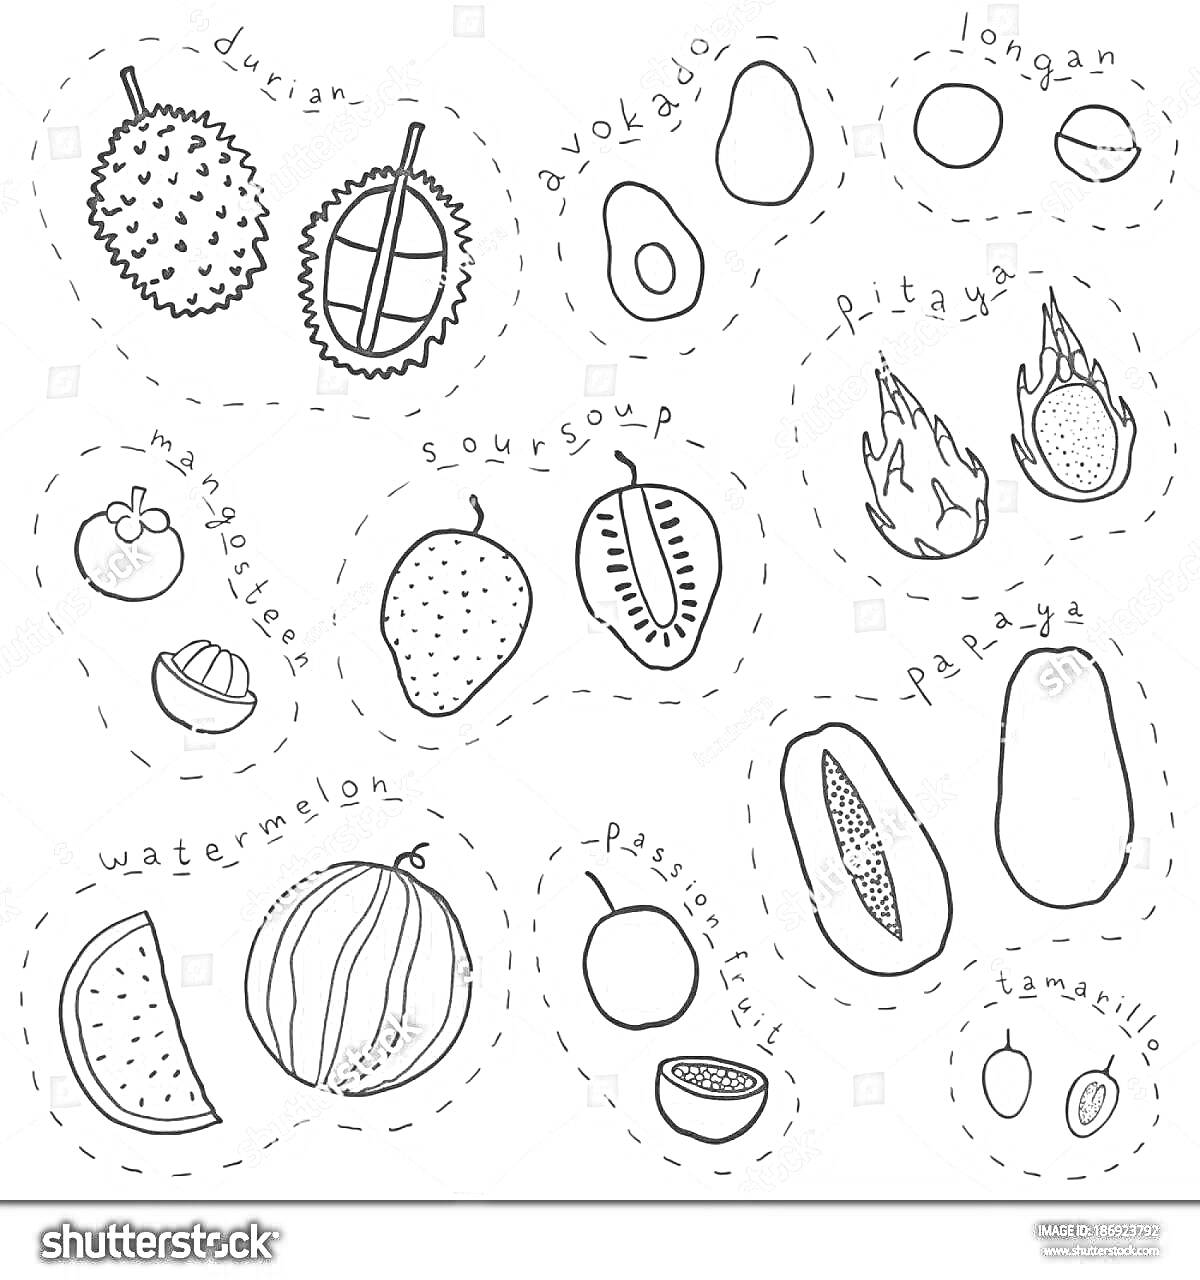 Раскраска Азиатские фрукты: дуриан, авокадо, лонган, питахайя, ягодка, мангостин, сметанное яблоко, маракуйя, папайя, авокадо, арбуз, маракуйя, папайя, тамаранд